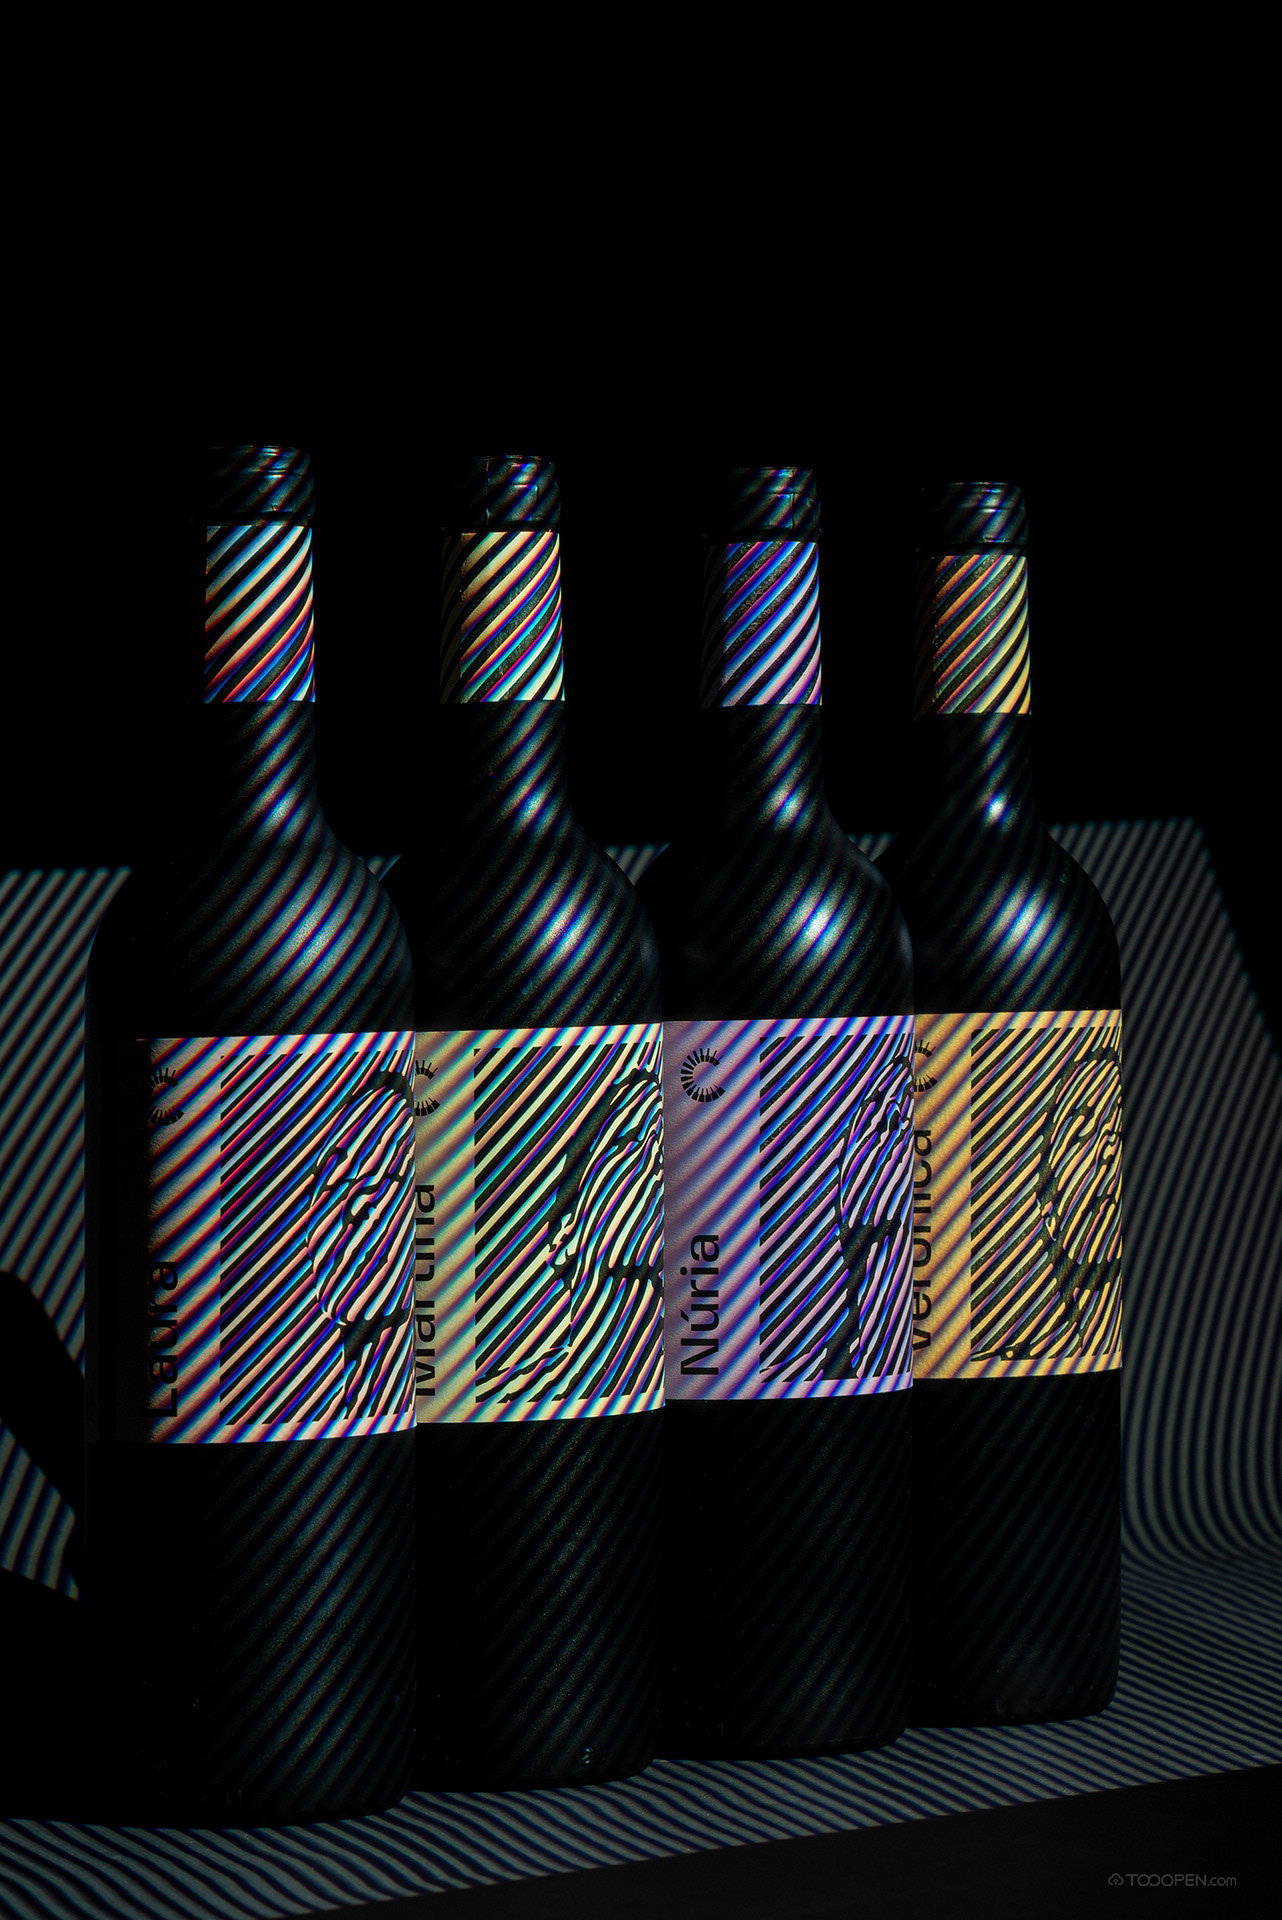 国外摩登葡萄酒包装设计欣赏-09